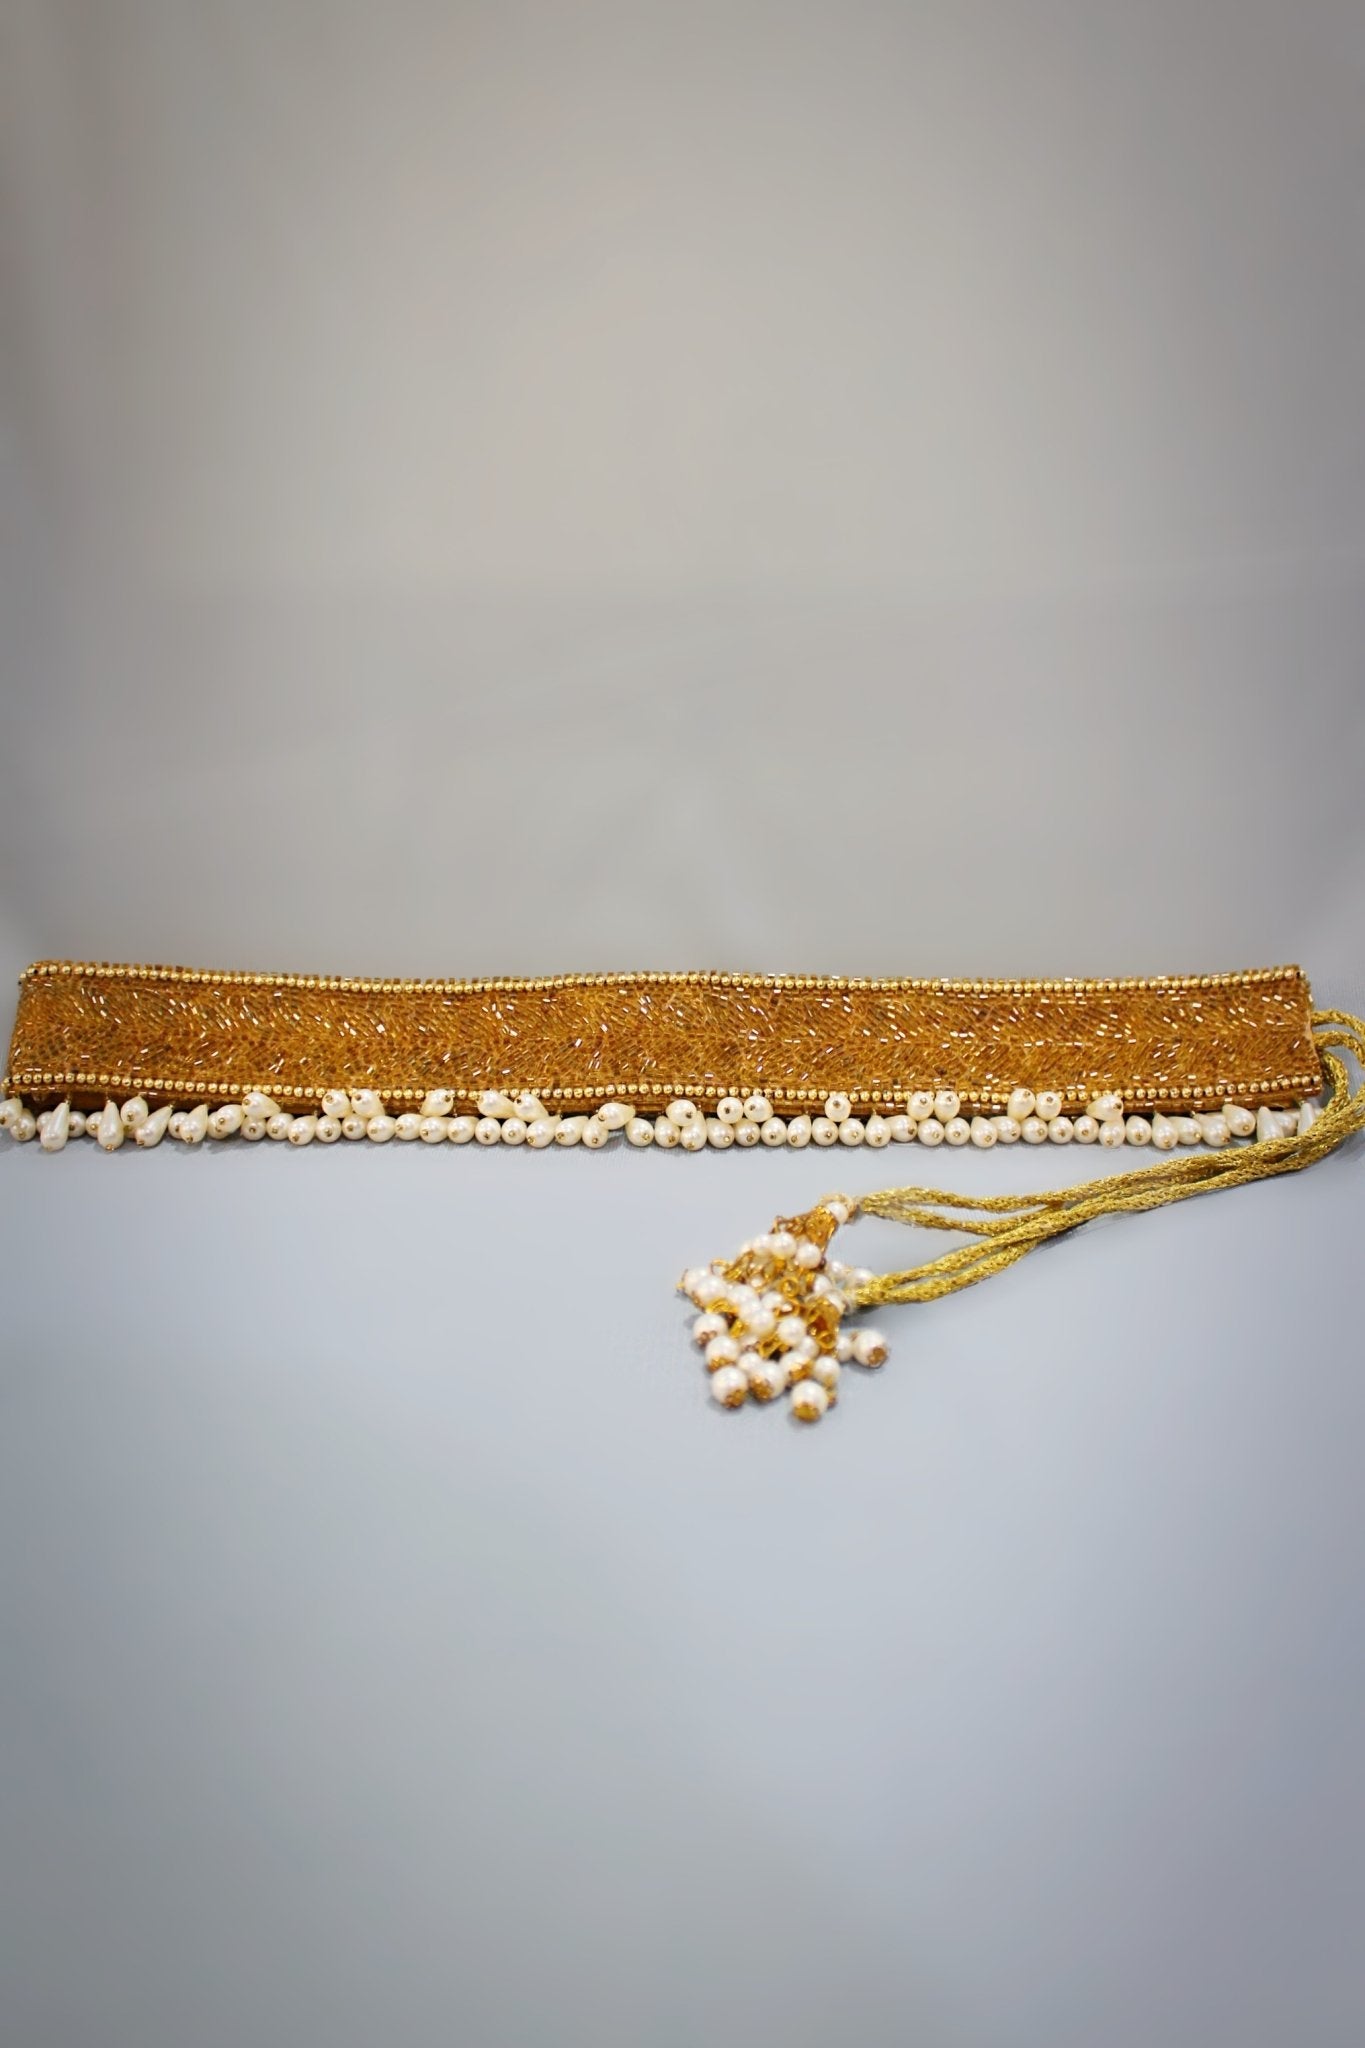 Silver Waist Belt for Saree - Handcrafted Golden Waist Belt